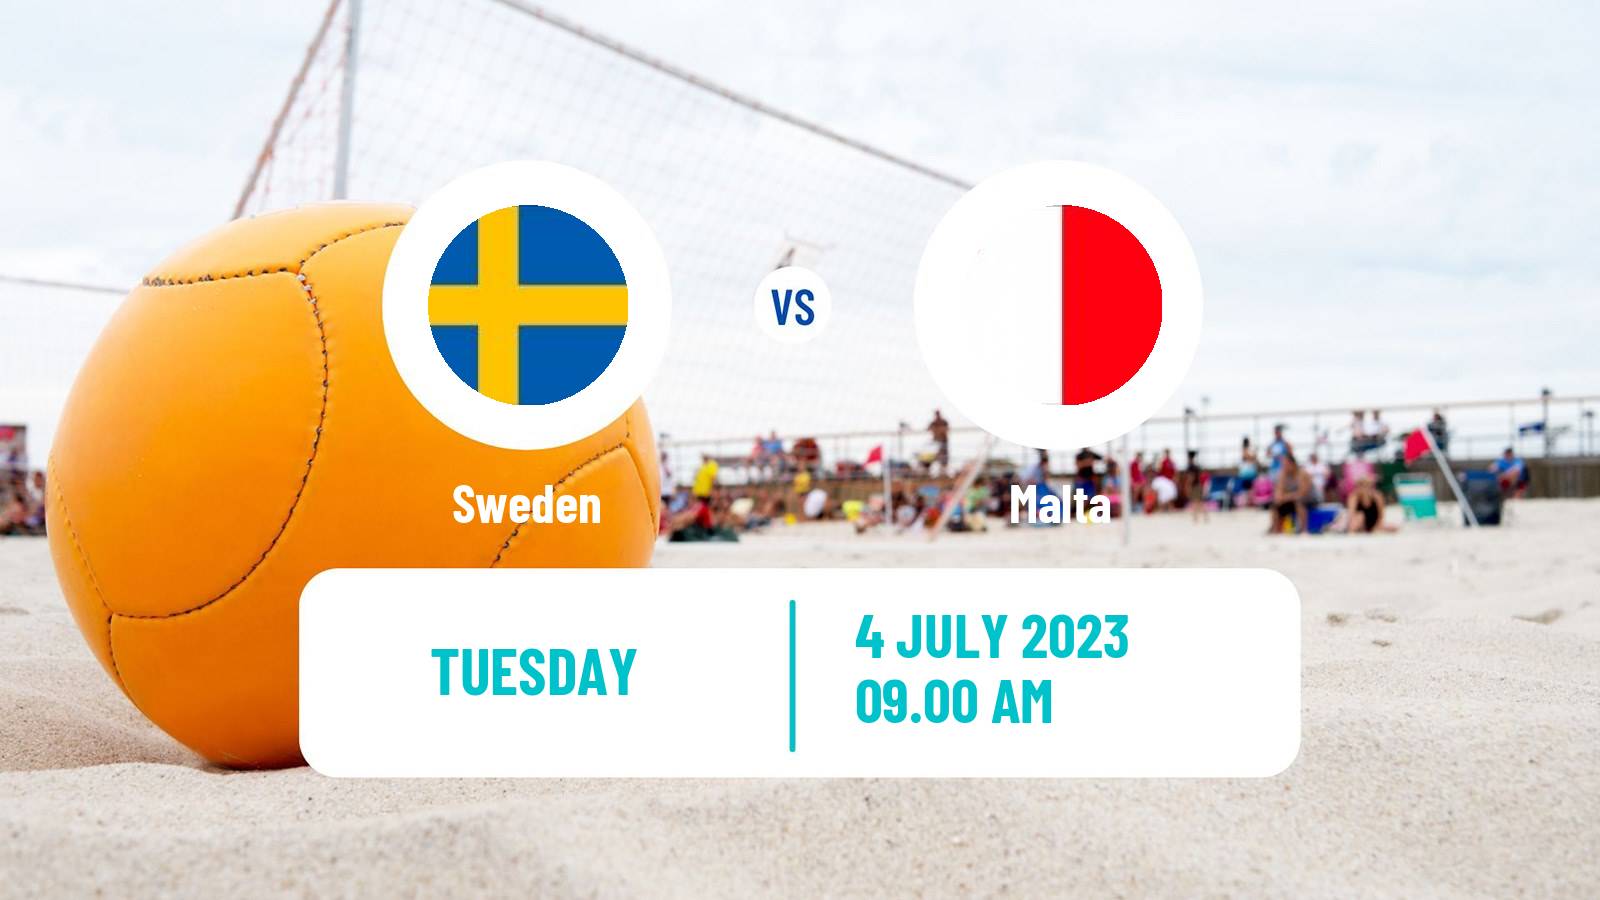 Beach soccer World Cup Sweden - Malta